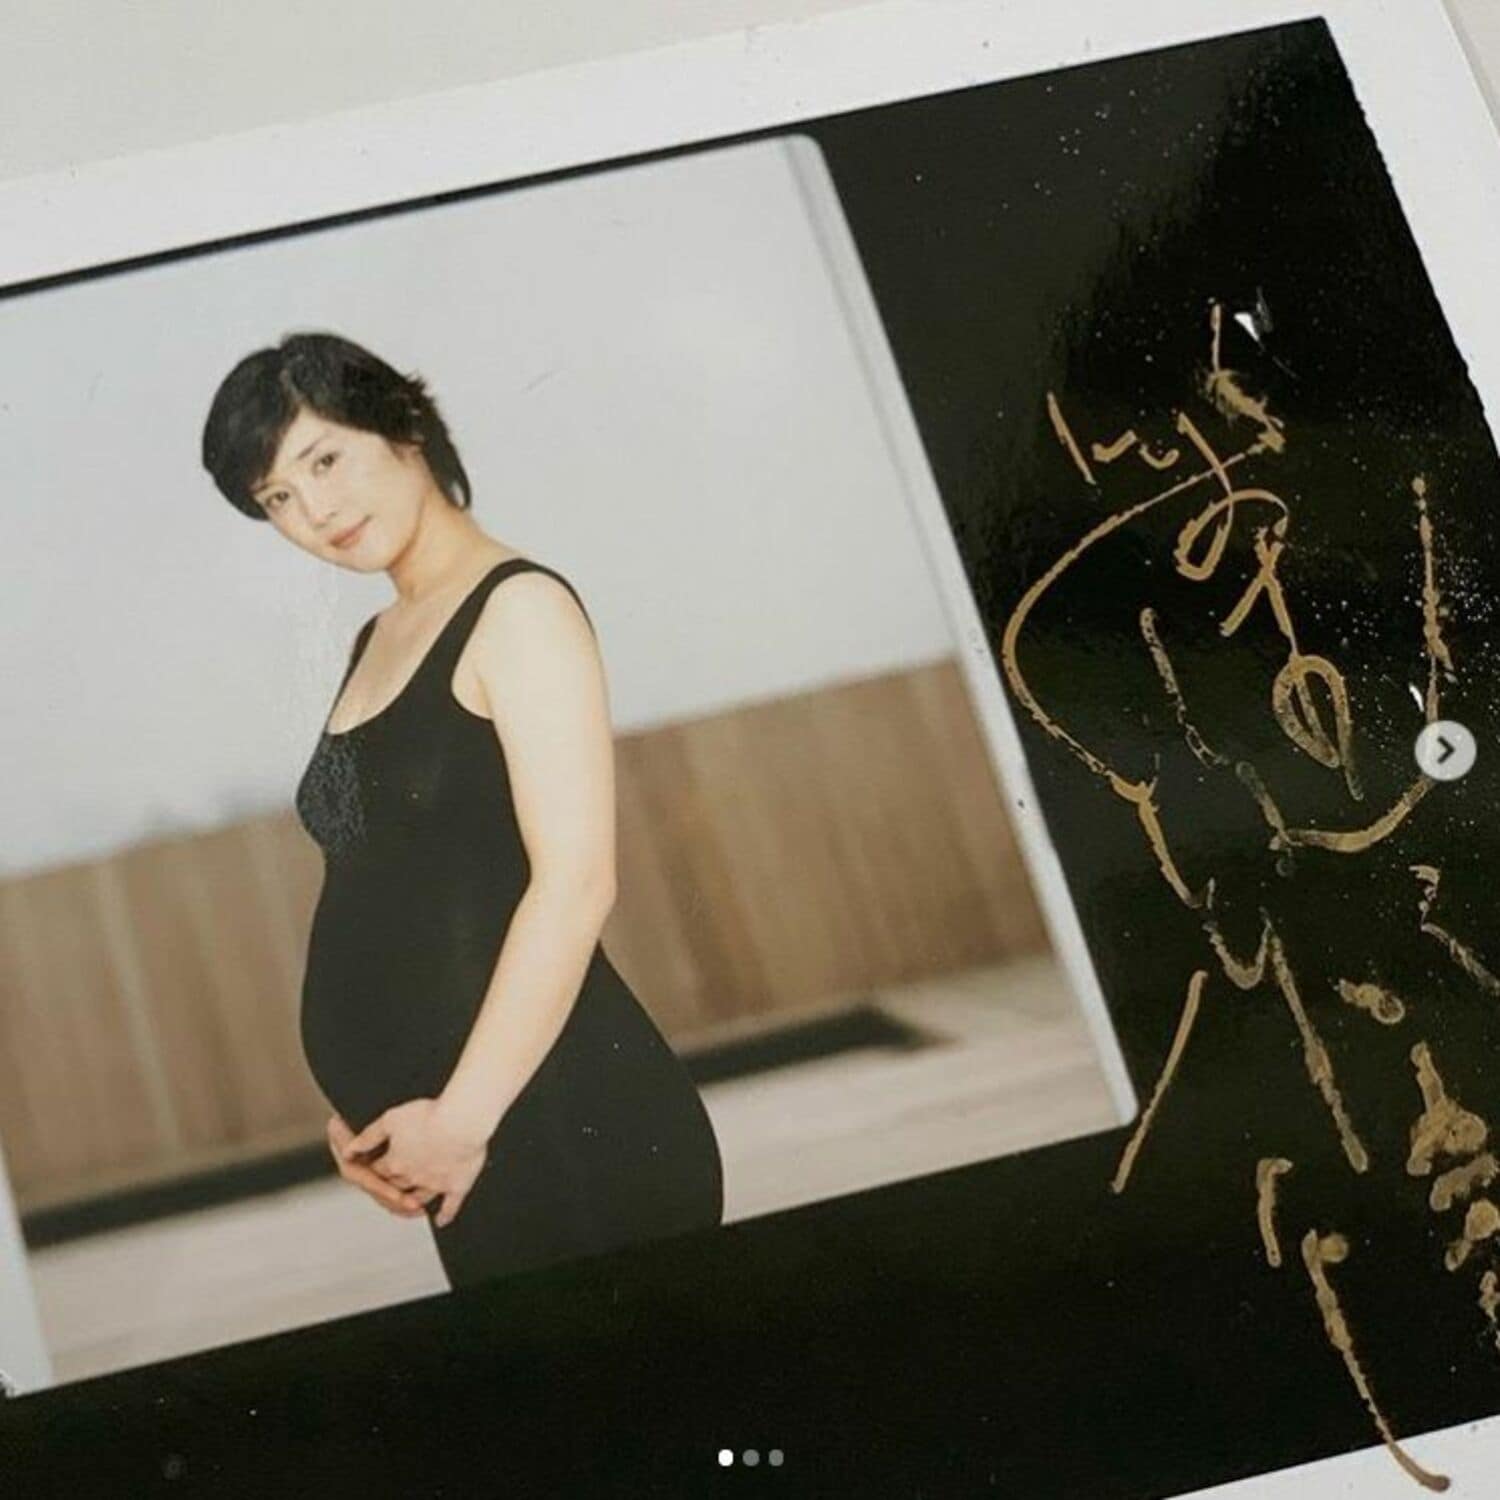 石田ひかり「おなかぽっこり」16年前のお宝マタニティフォトを公開の画像